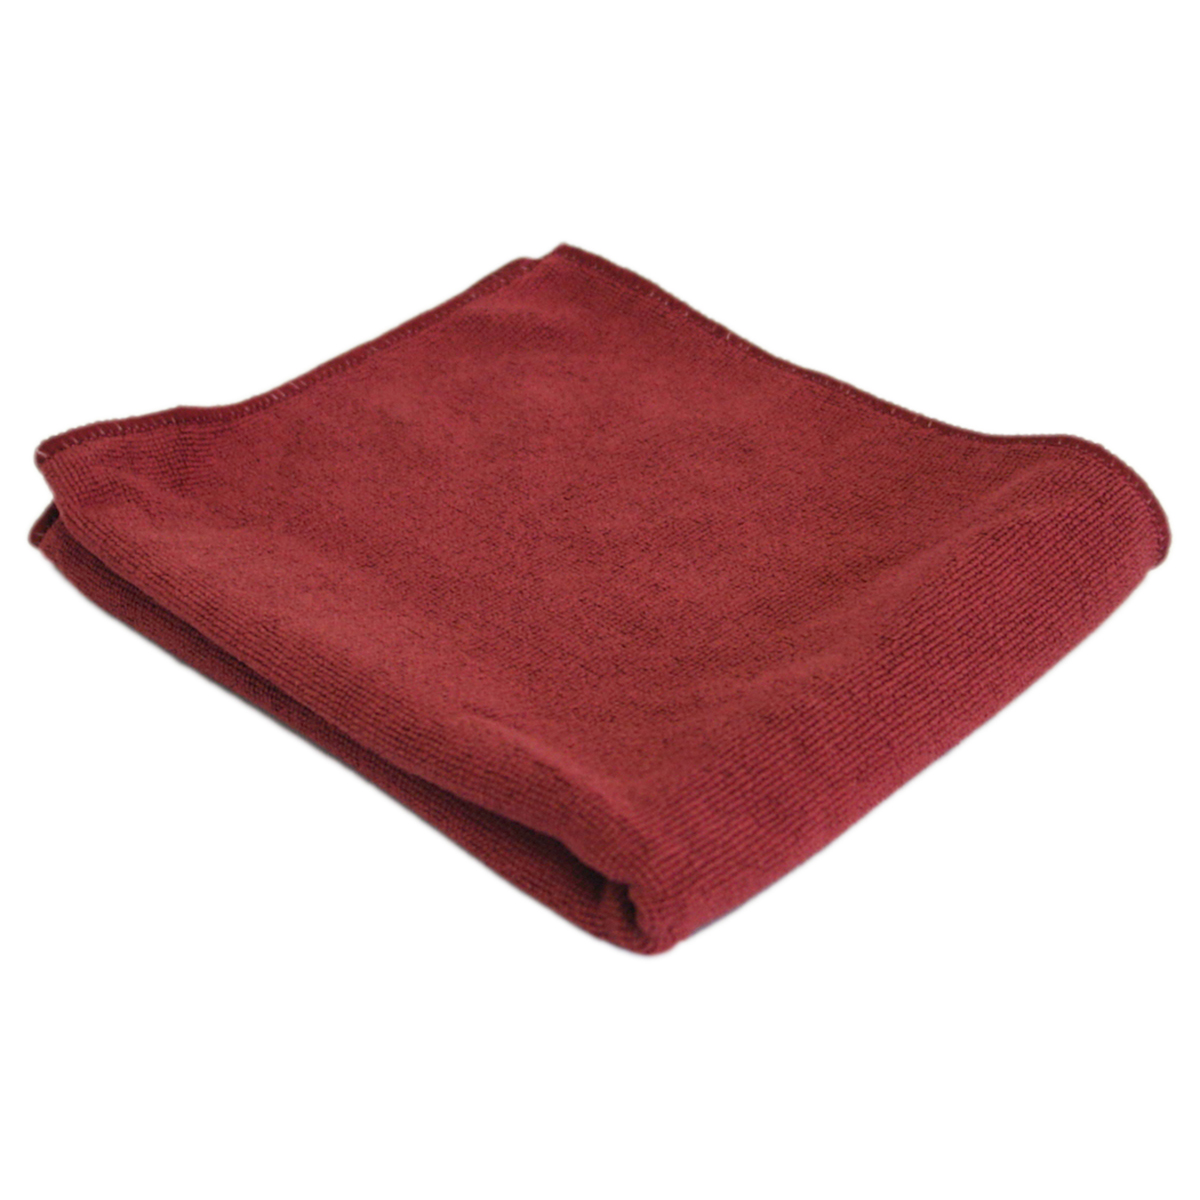 фото Тряпка для пола рыжий кот (микрофибра) 40 x 50 см, бордовая